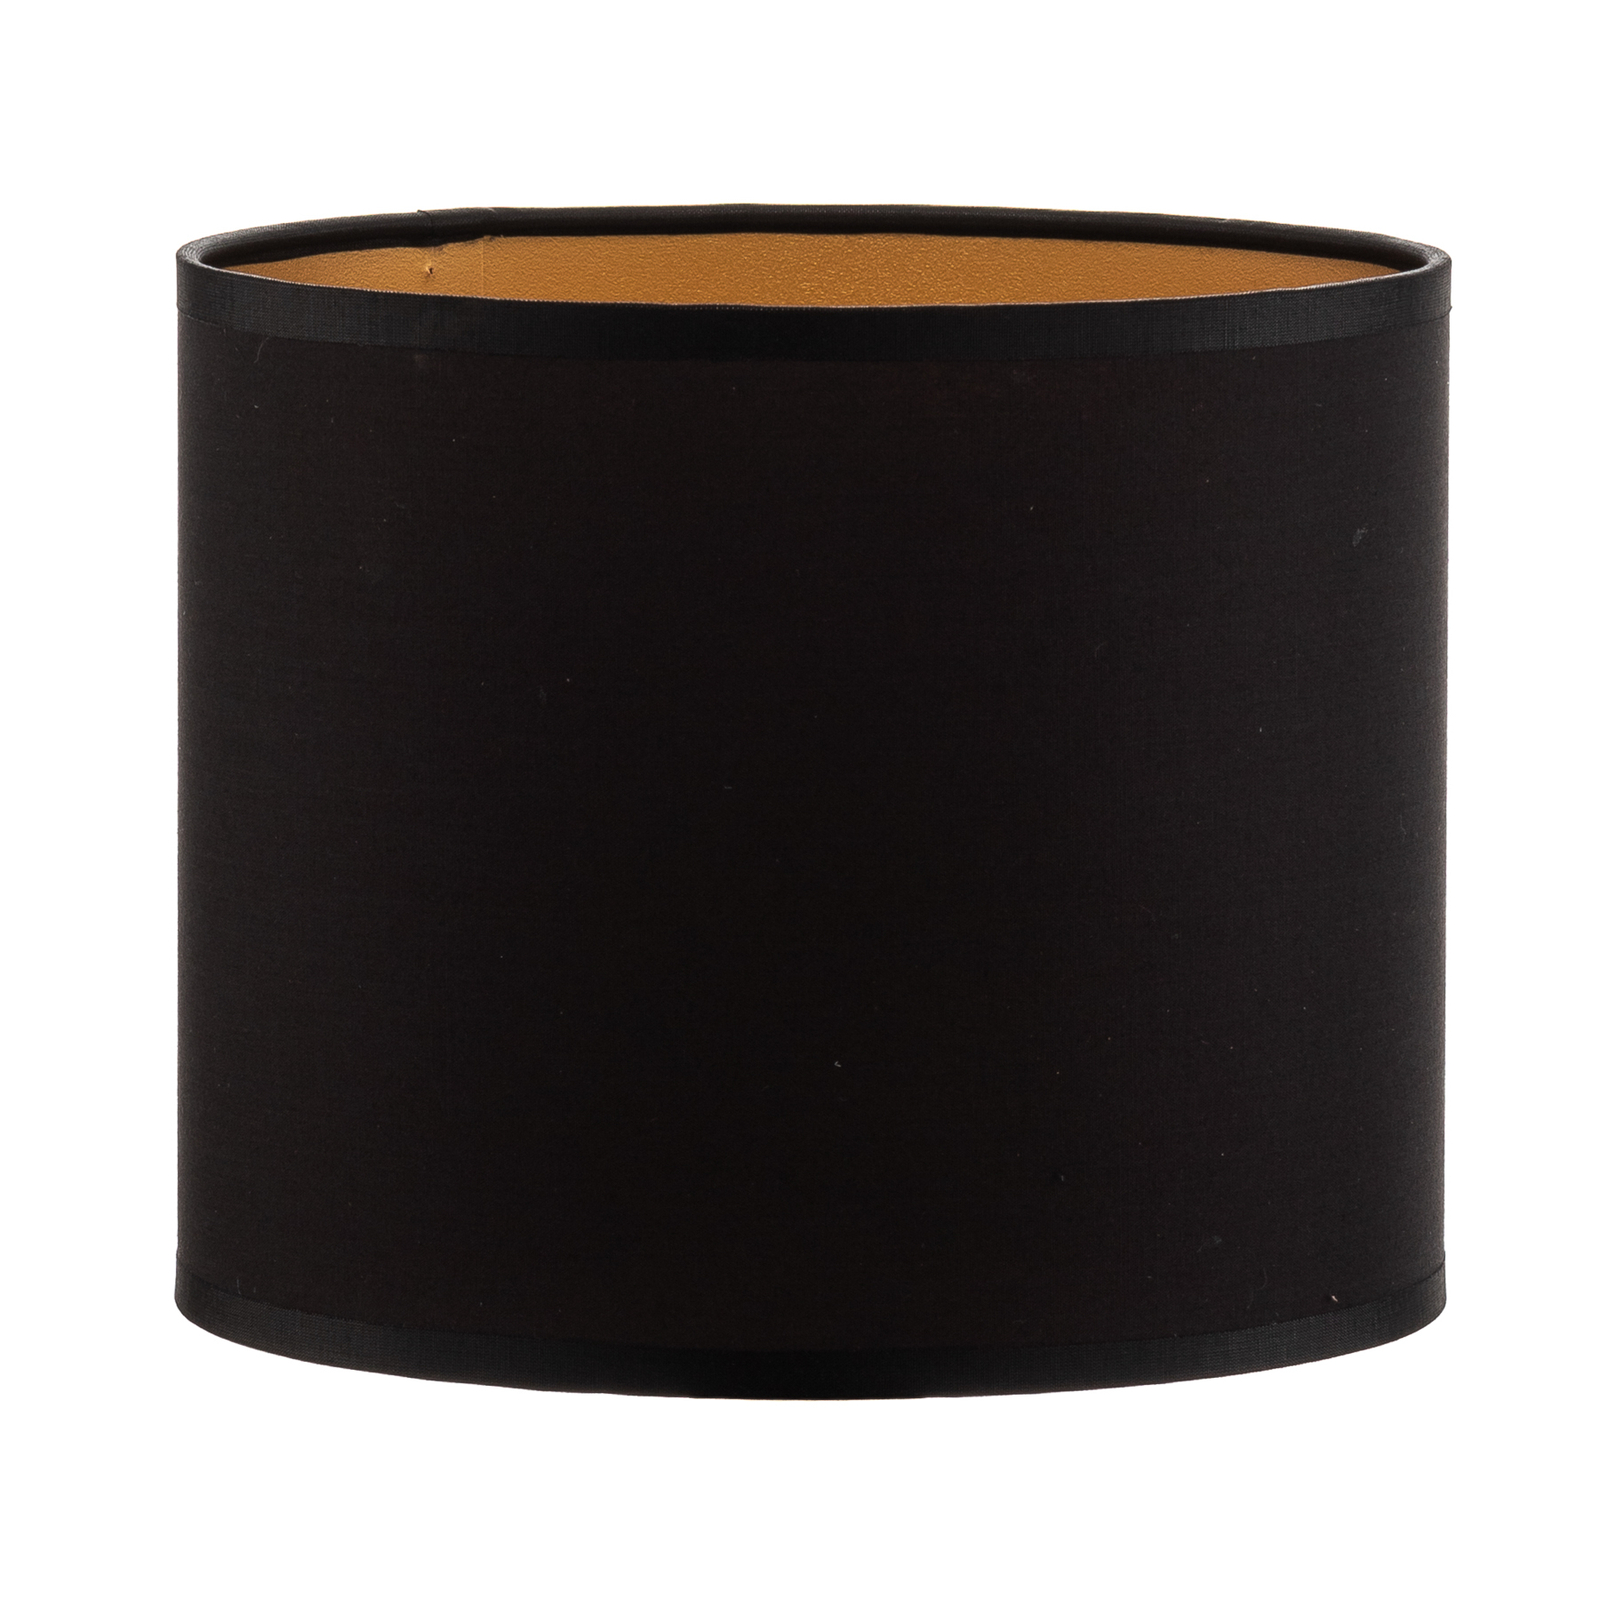 Šviestuvo gaubtas "Soho", juodas/auksinis, tekstilė, Ø 18 cm